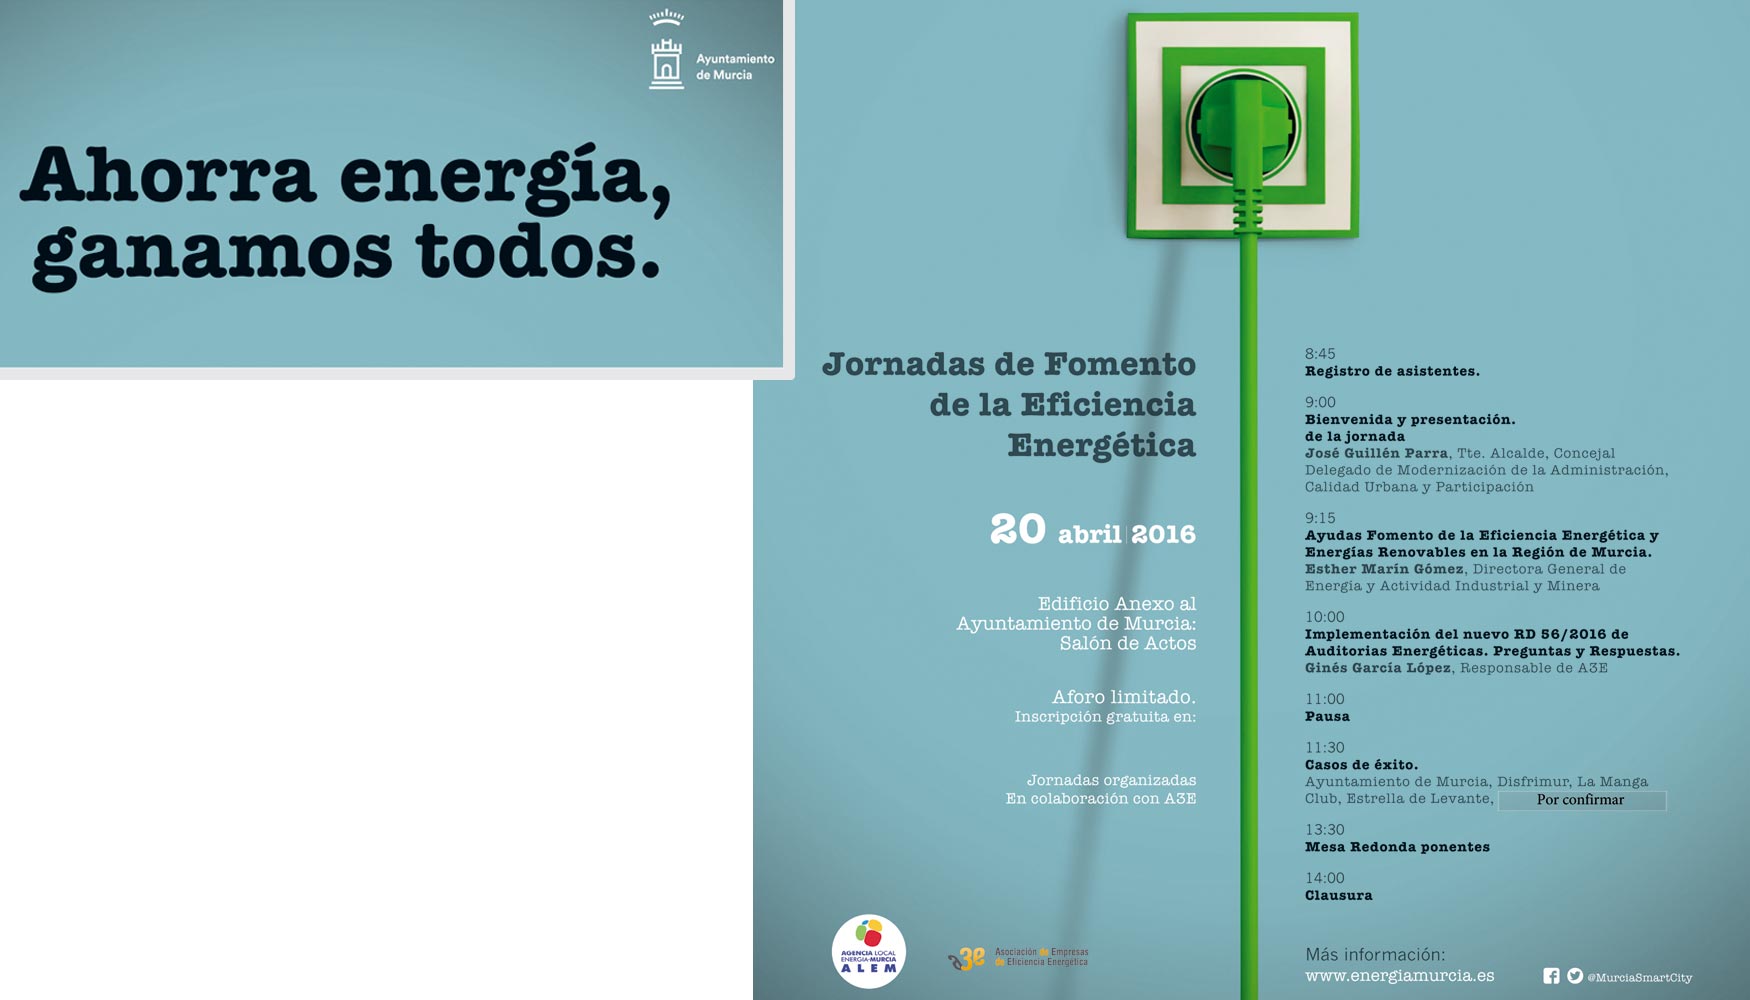 Ahorra energa, ganamos todos, el lema de las Jornadas de Fomento de la Eficiencia Energtica organizadas por el Ayuntamiento de Murcia y A3e...